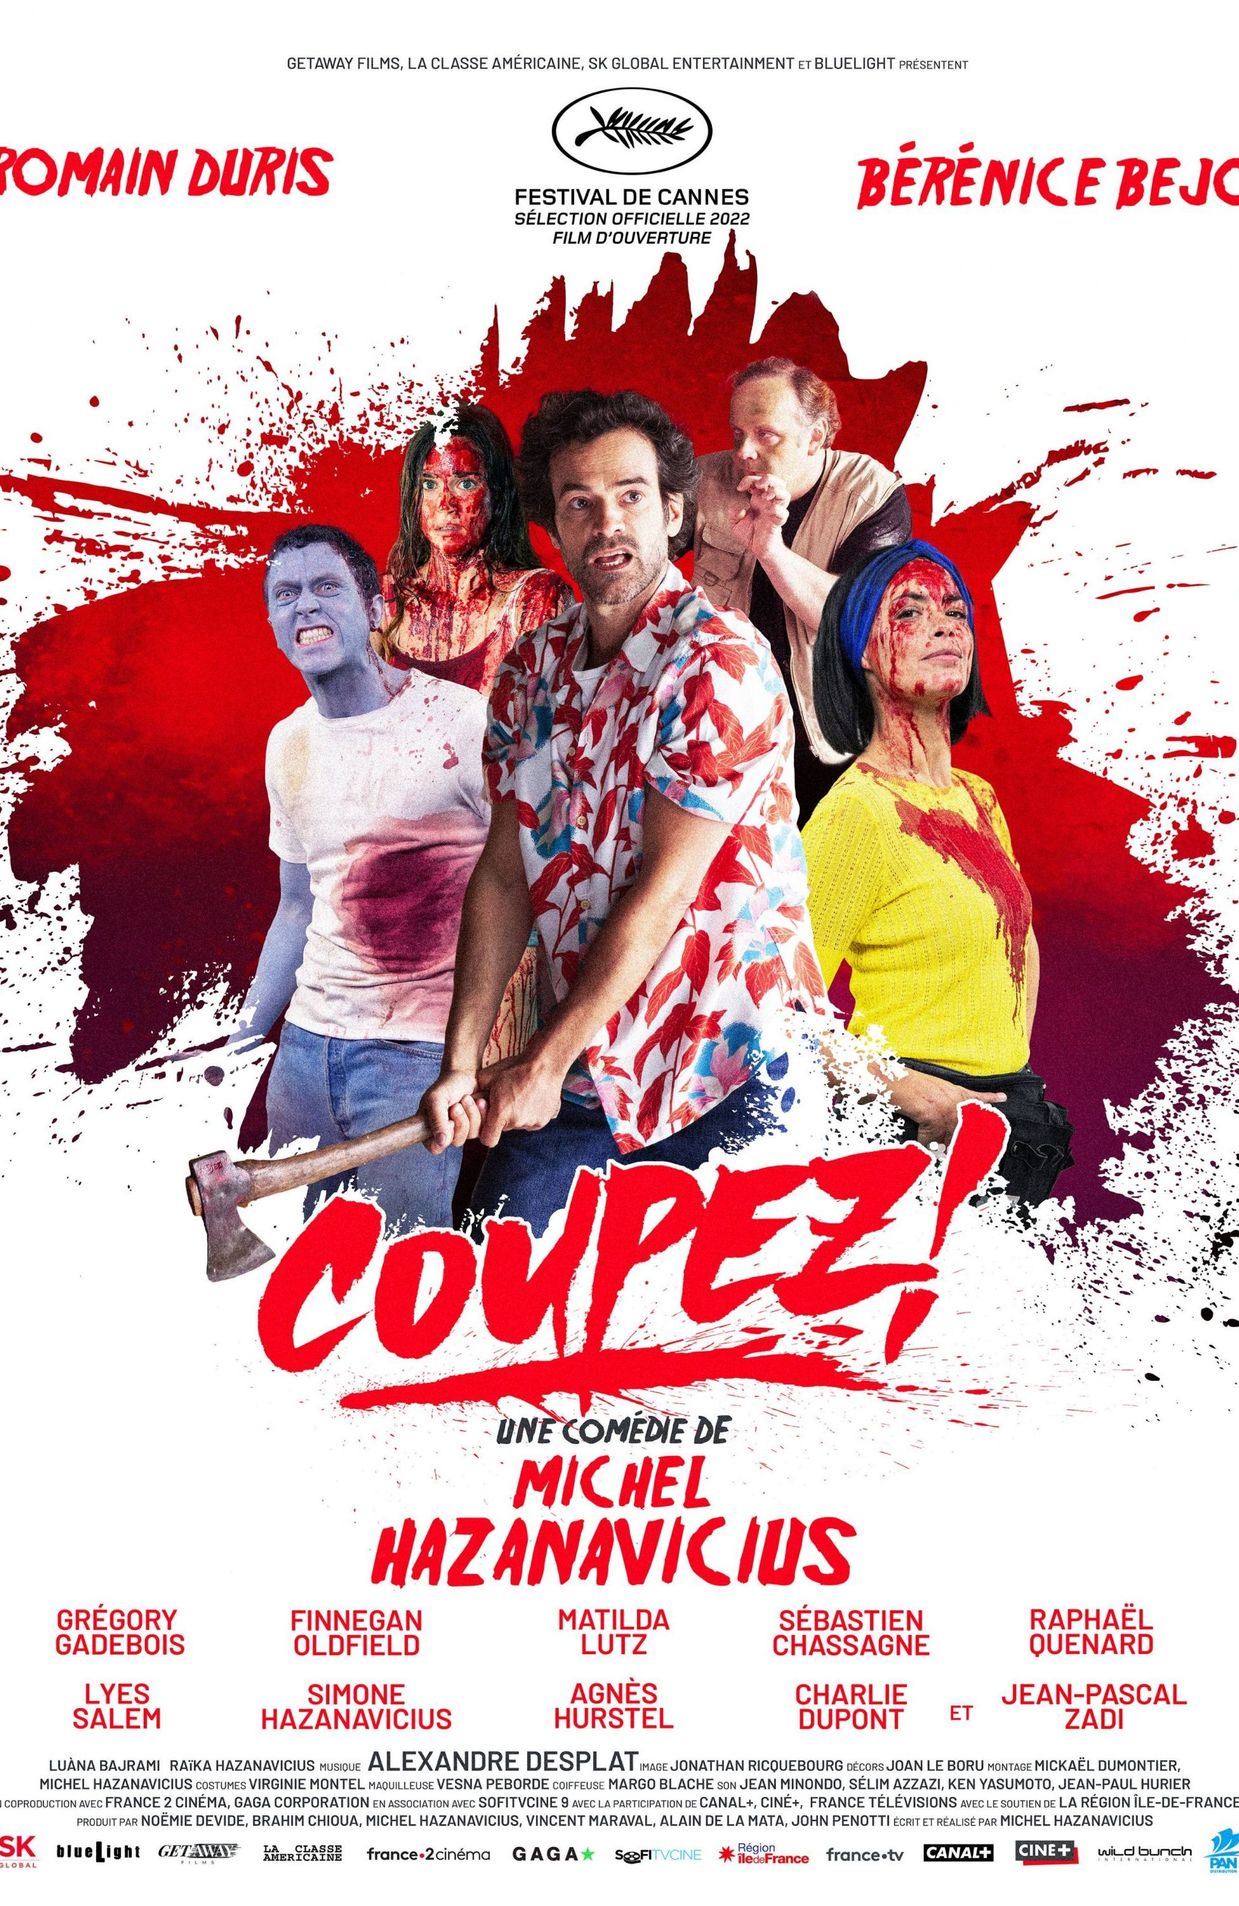 L'affiche de "Coupez!" le film de Michel Hazanavicius en ouverture du festival de Cannes